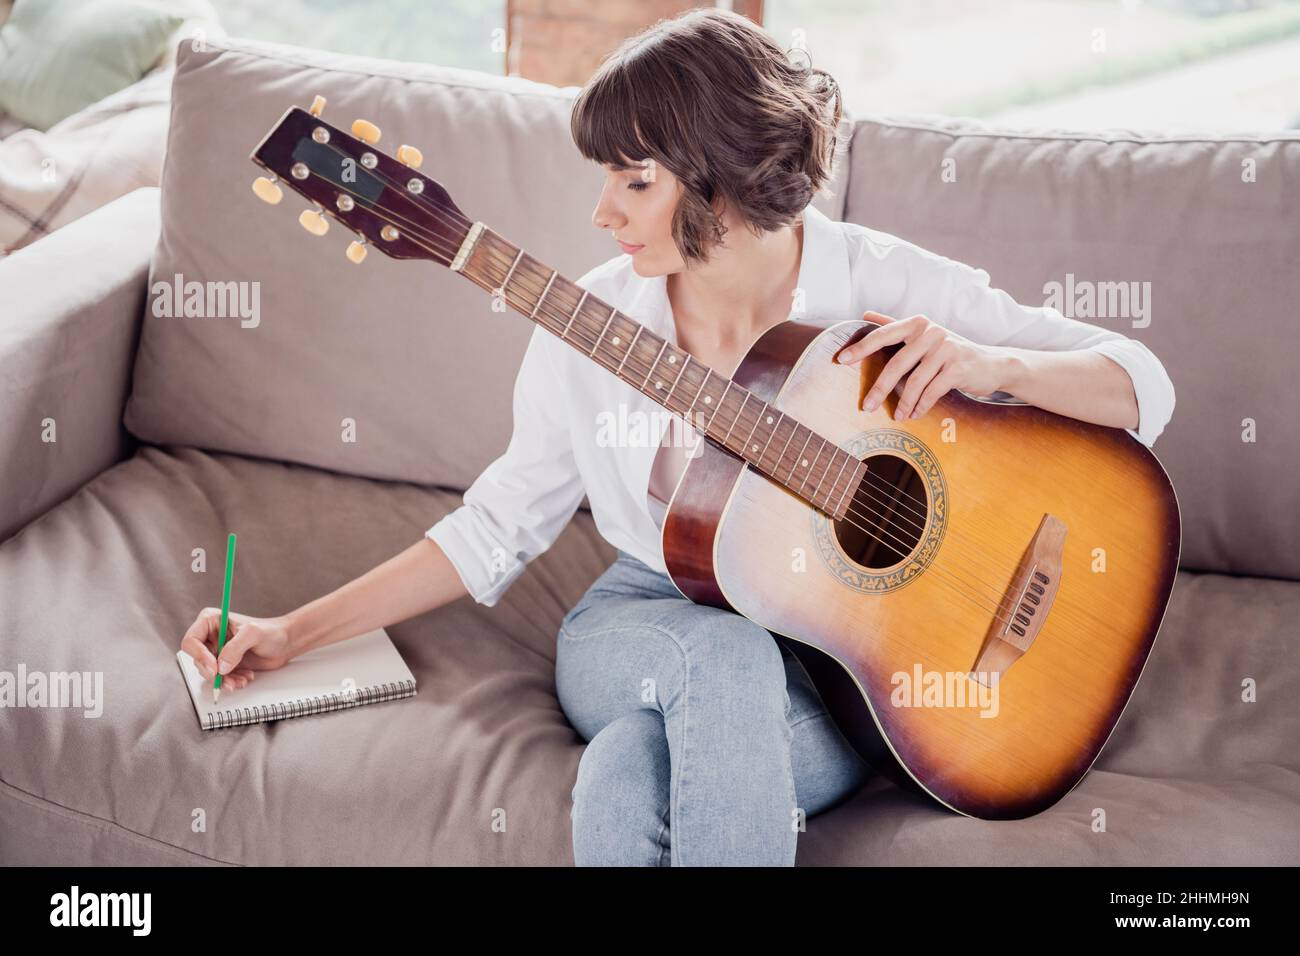 Portrait Foto junge Frau, die lernt, akustische Gitarre zu spielen, sitzt auf dem Sofa und schreibt Notizen mit Bleistift Stockfoto